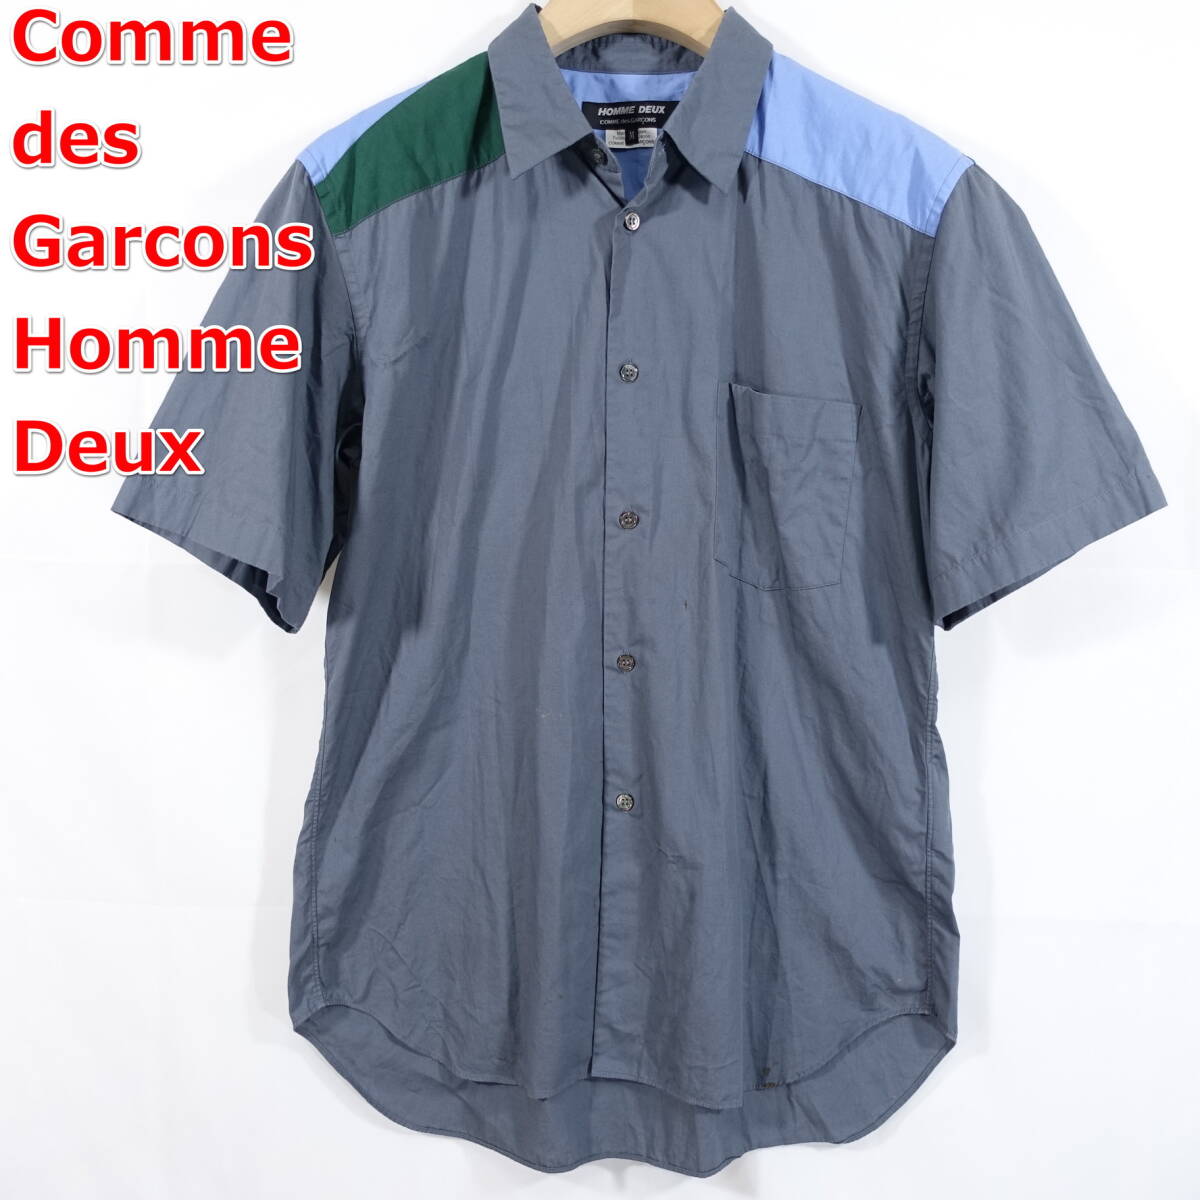 [ superior article ] Comme des Garcons Homme du ash series patchwork short sleeves shirt COMME des GARCONS Homme Deux size M